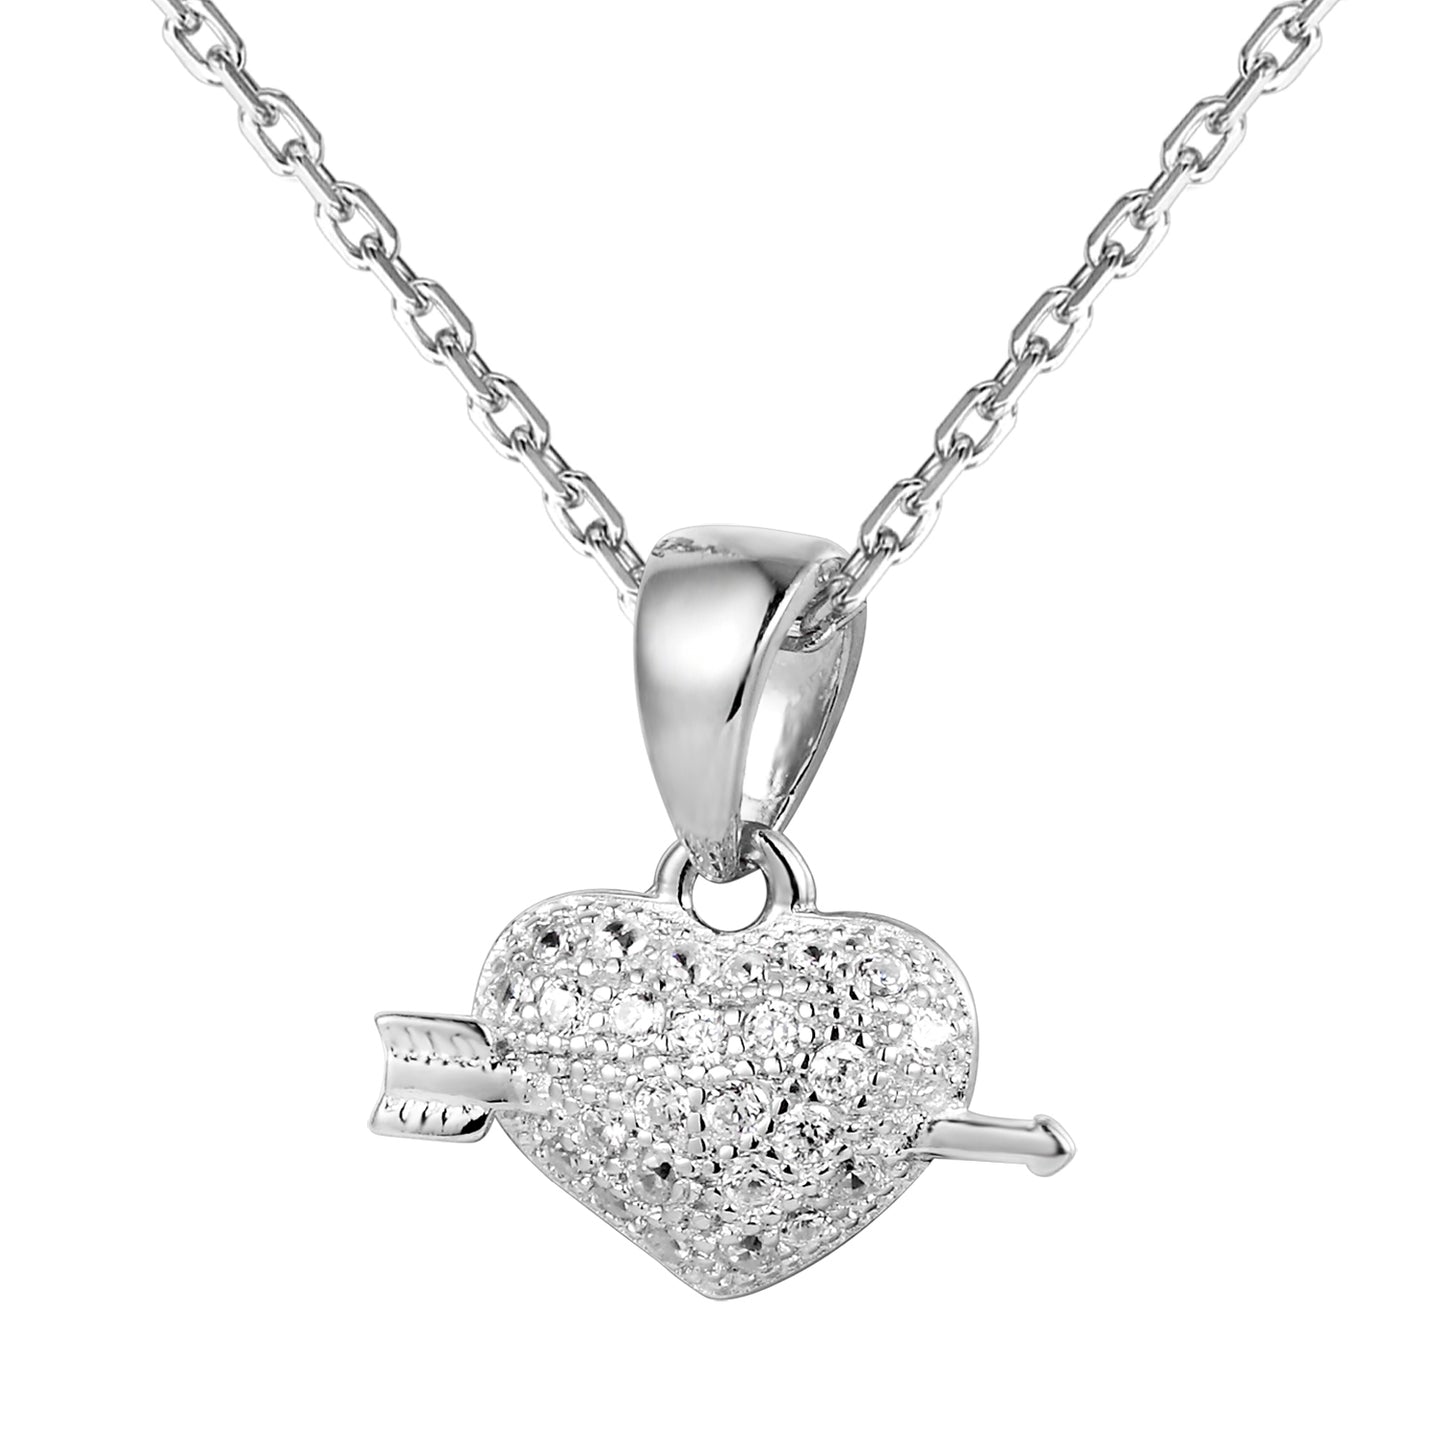 Mini Heart & Arrow Sterling Silver Pendant Chain Valentine's